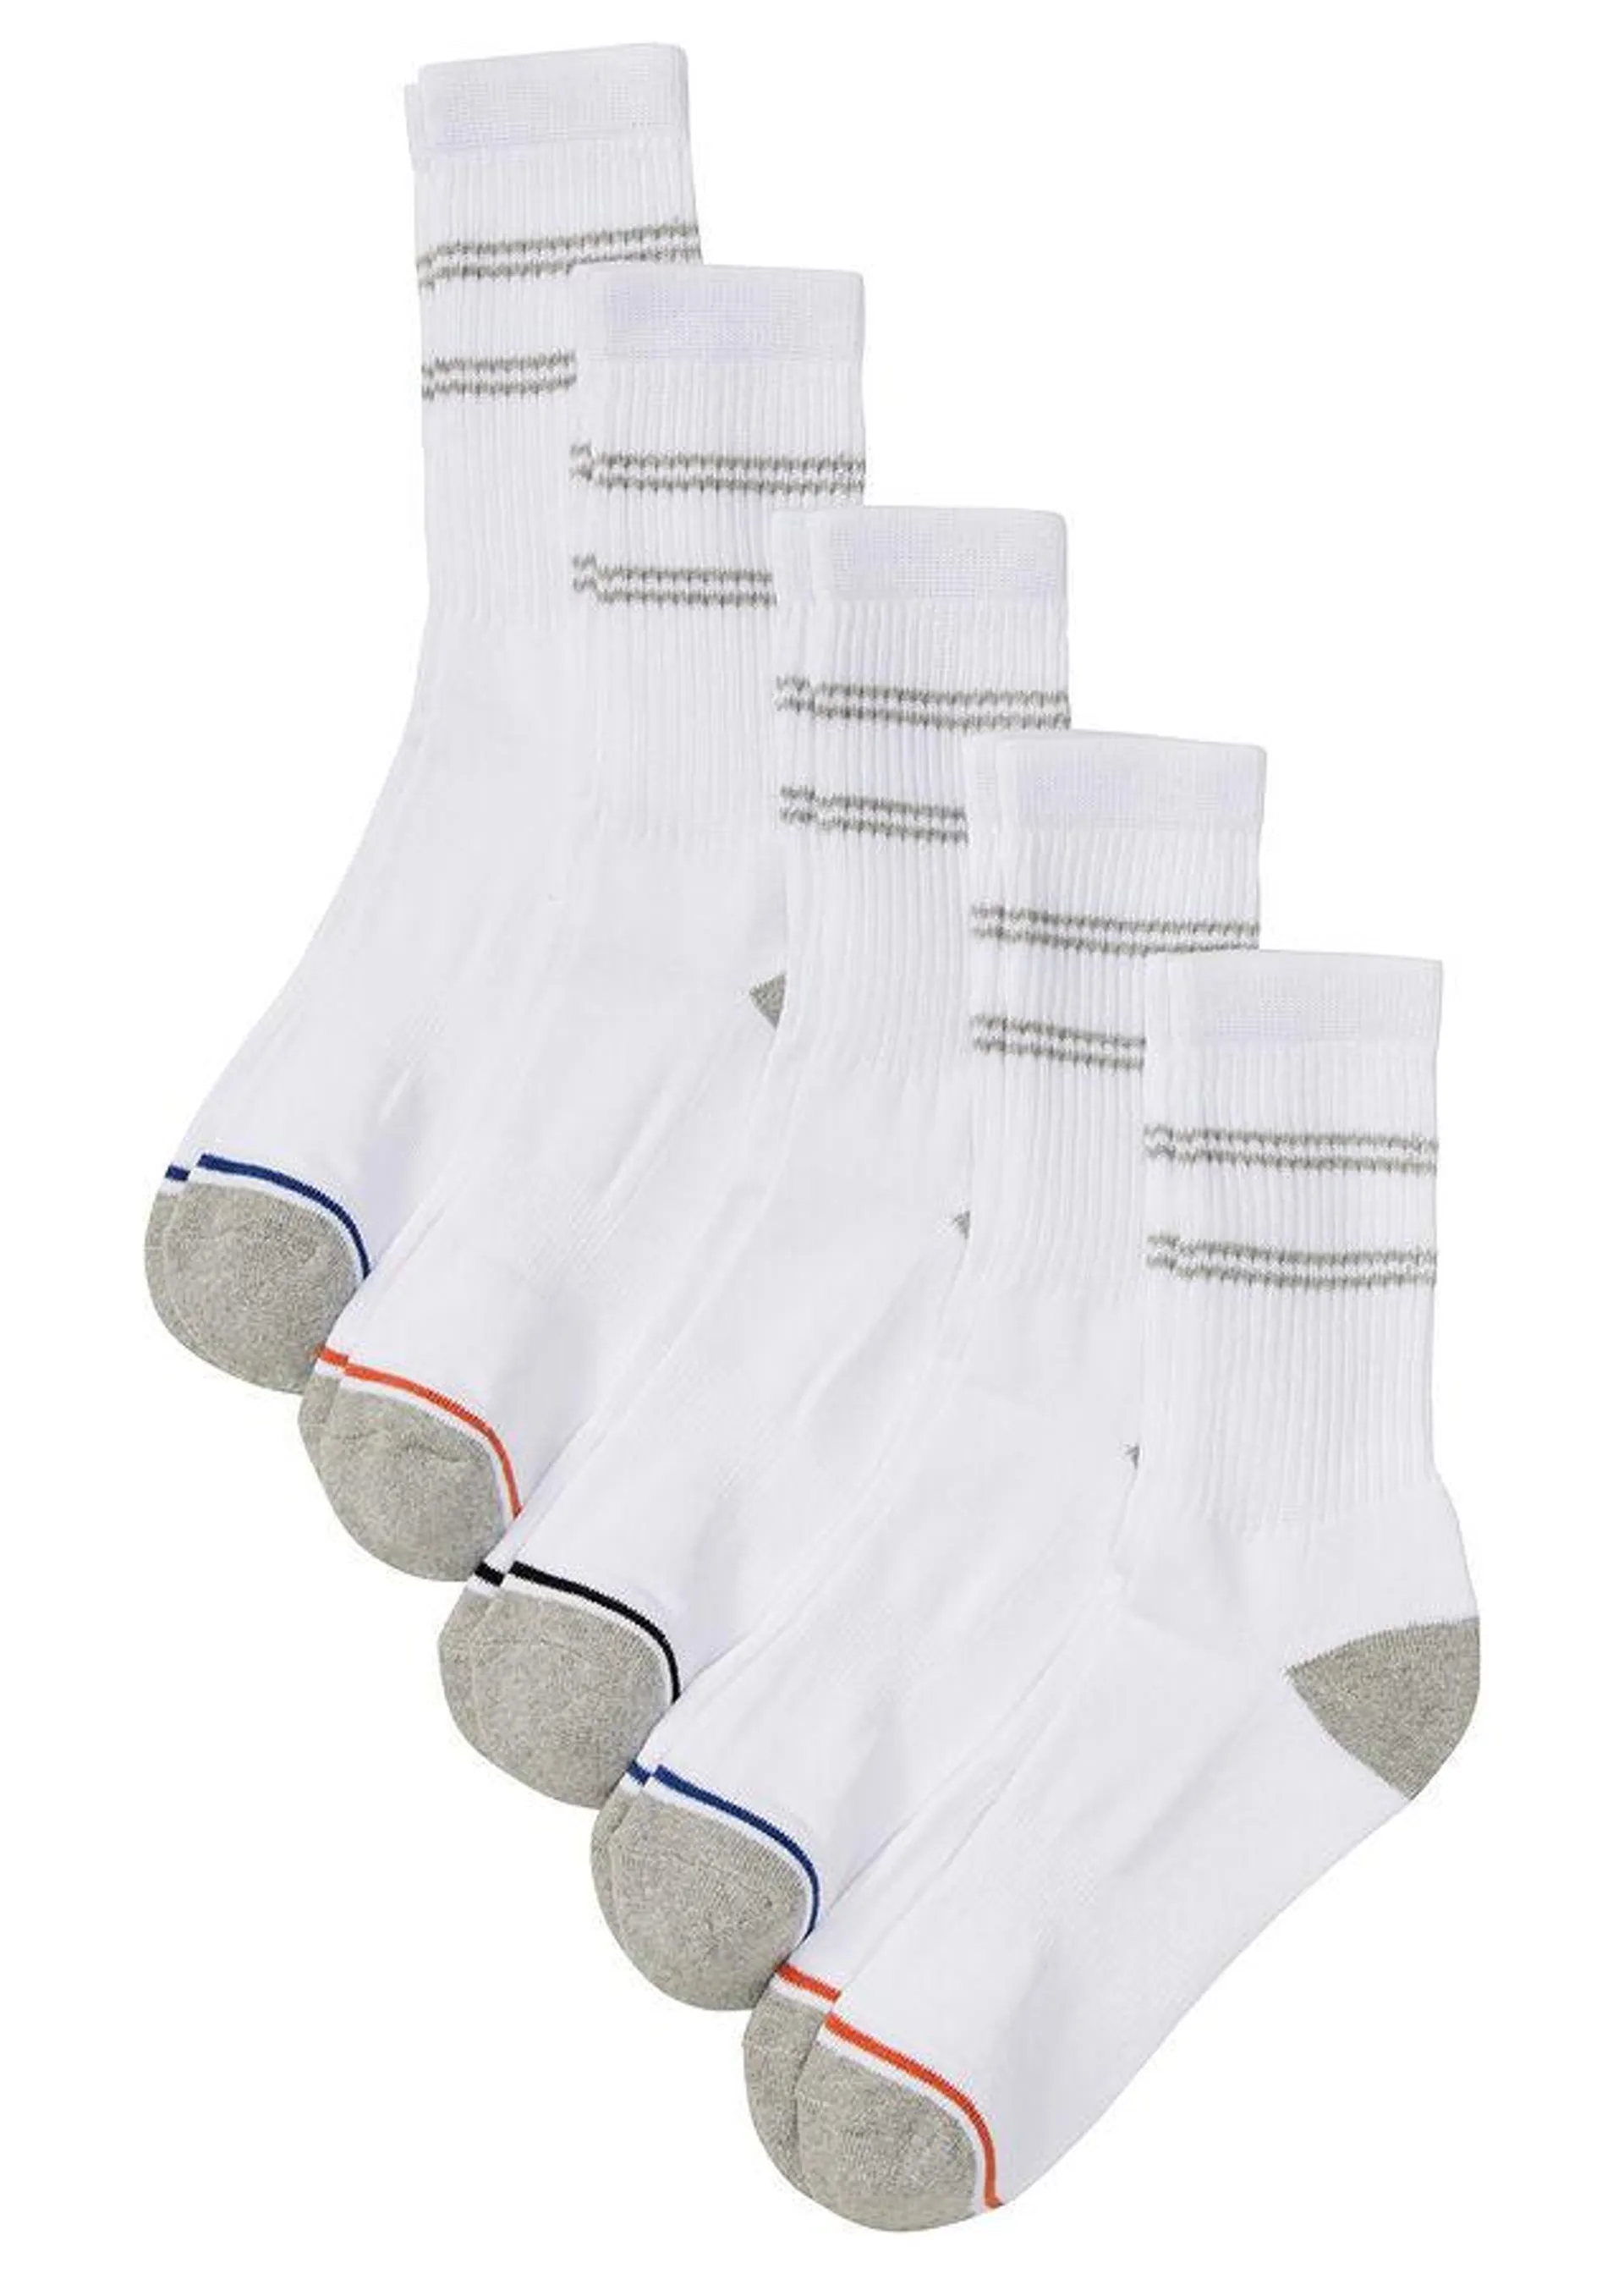 Tenisové ponožky (5 ks) s vnútorným froté na podrážke s bio bavlnou